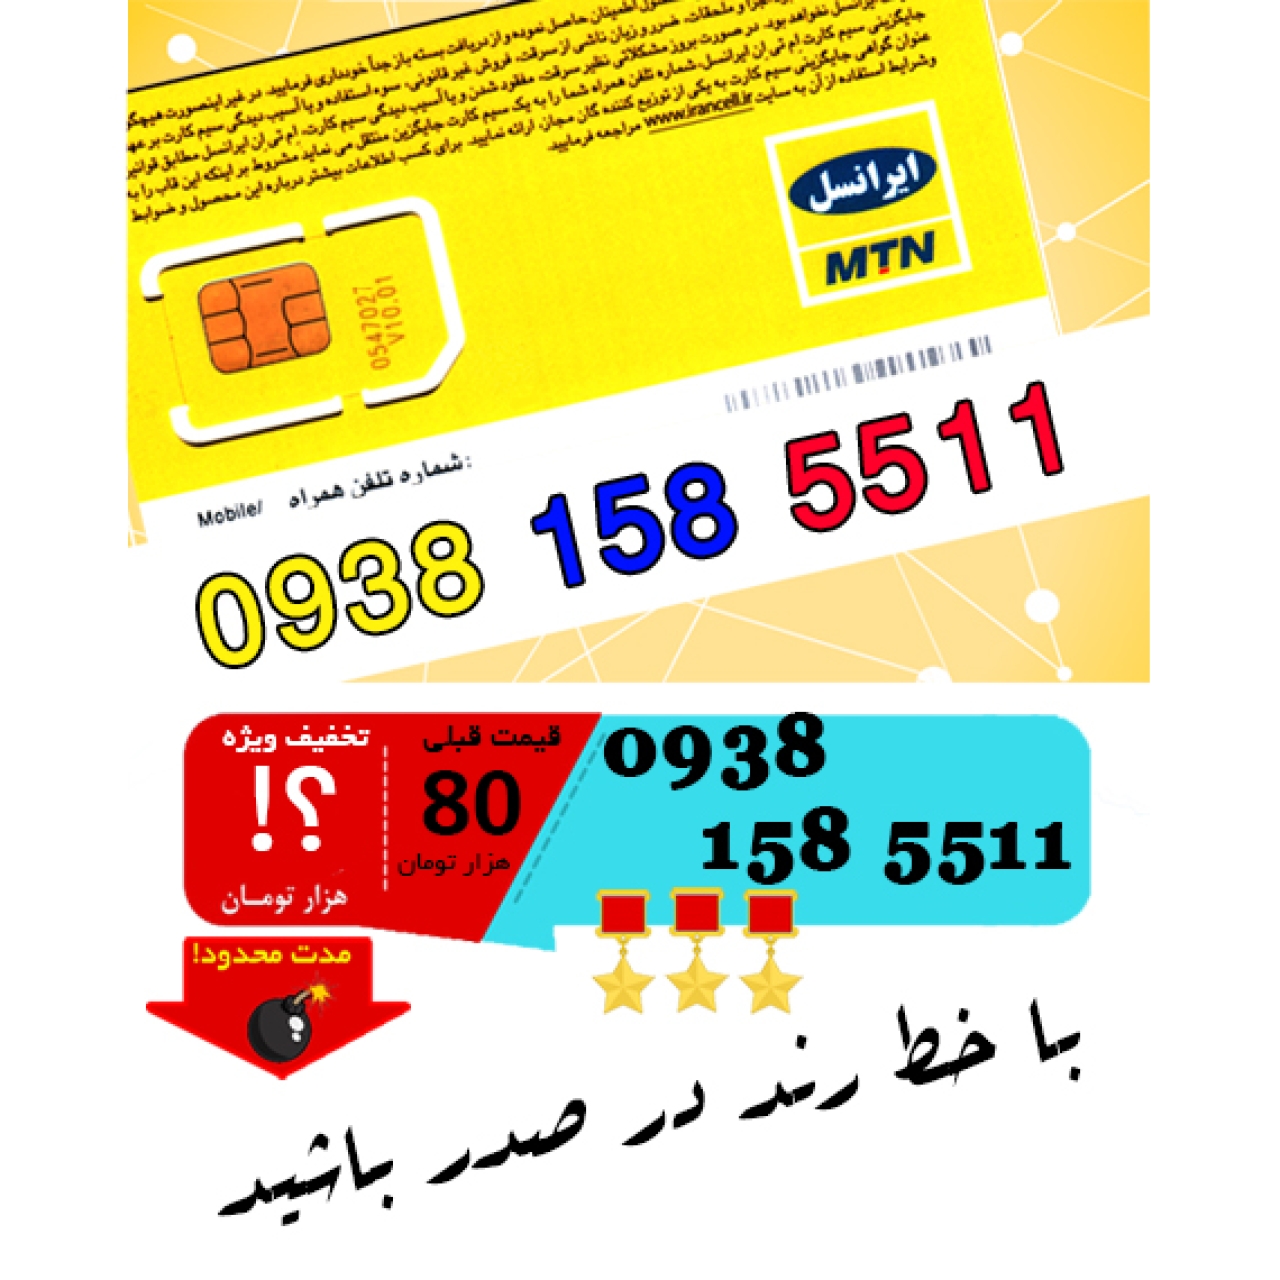 سیم کارت اعتباری ایرانسل 09381585511